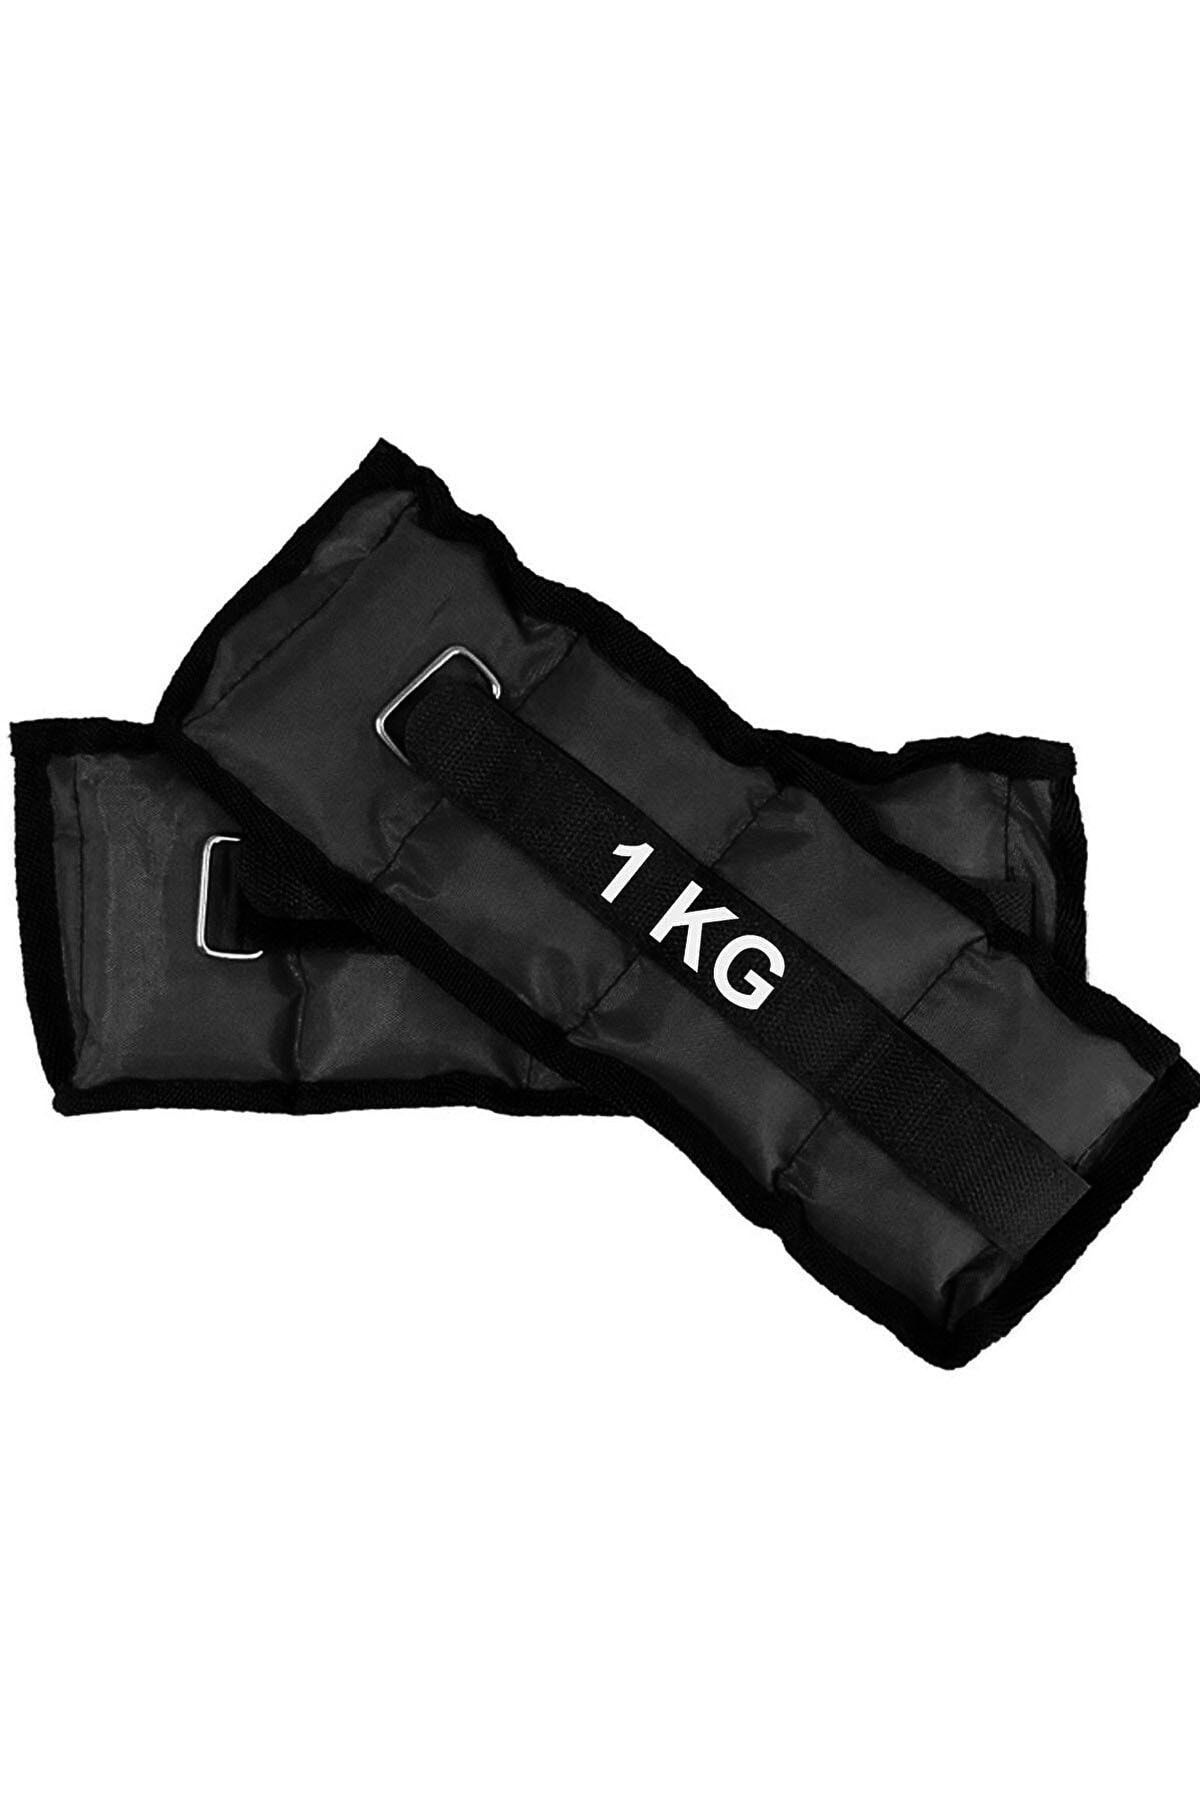 Jet El Ve Ayak Bilek Ağırlığı 2x1 Kg Kum Torbası Korsesi Ağırlık Kas Güçlendirmek Pilates 1kg Siyah Set